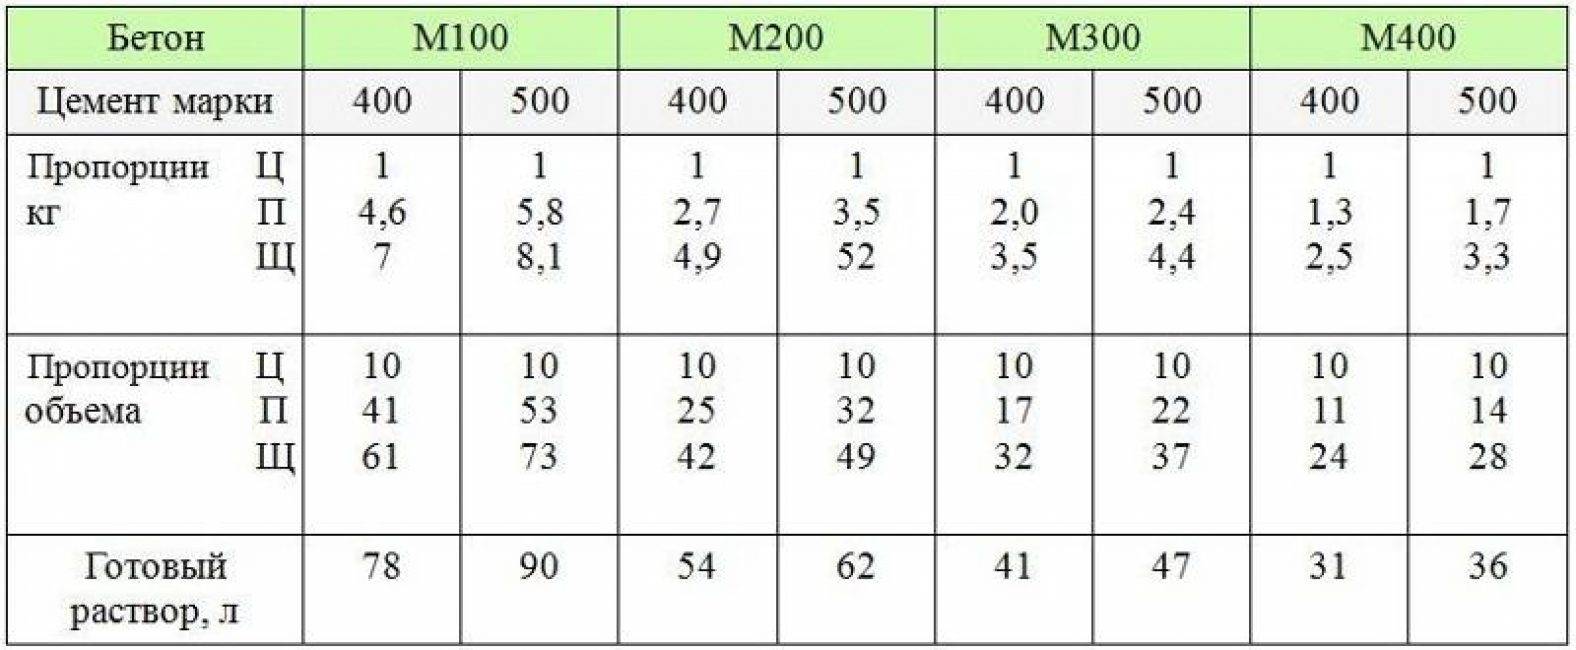 Как мешать пескобетон м500 и м300 с цементом: состав и пропорции в массовых долях